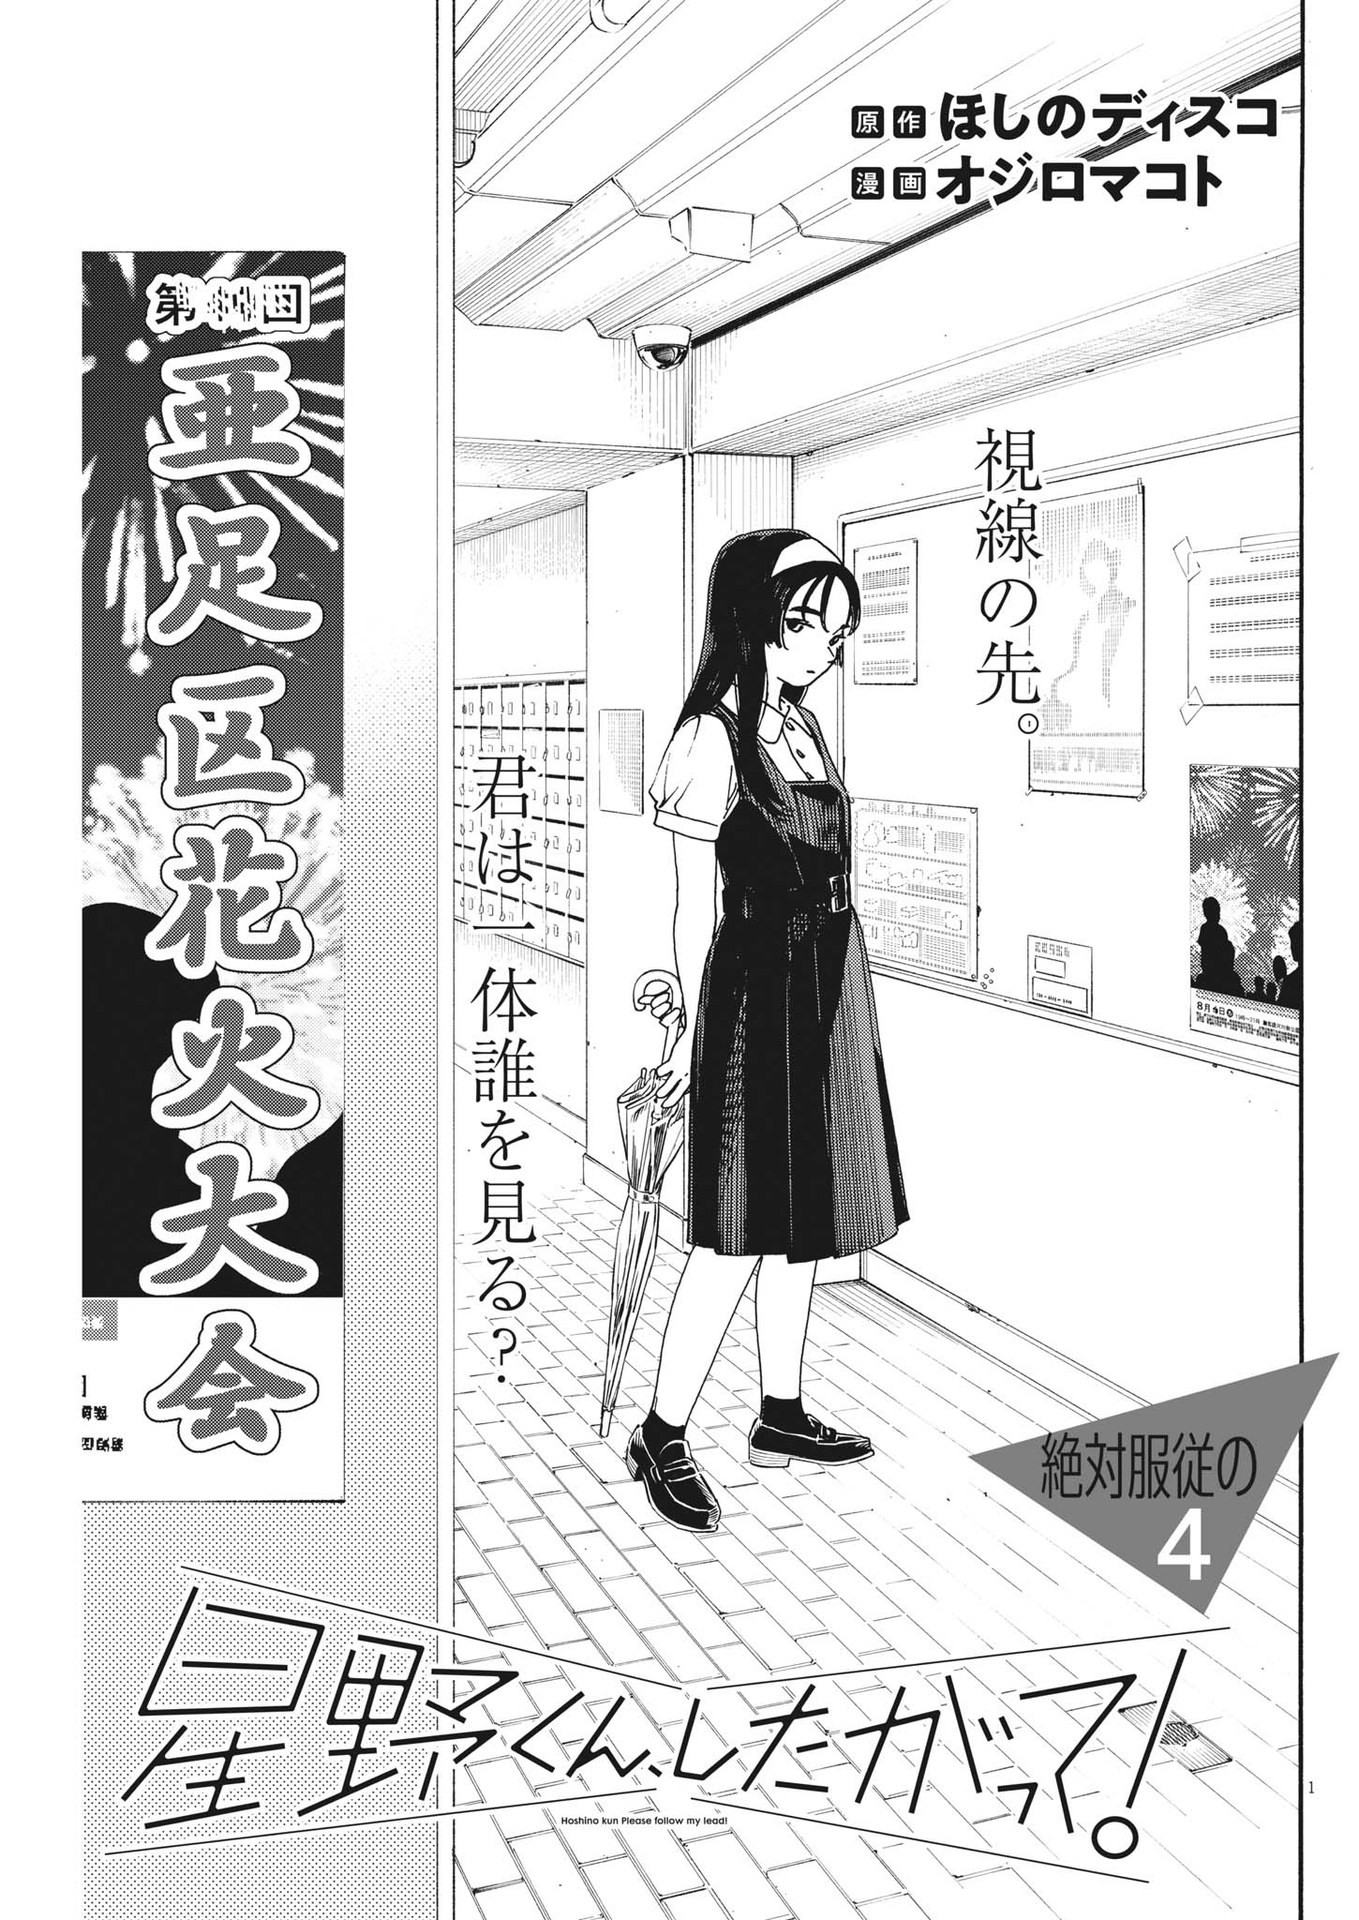 Hoshino-kun, Shitagatte! - Chapter 4 - Page 1